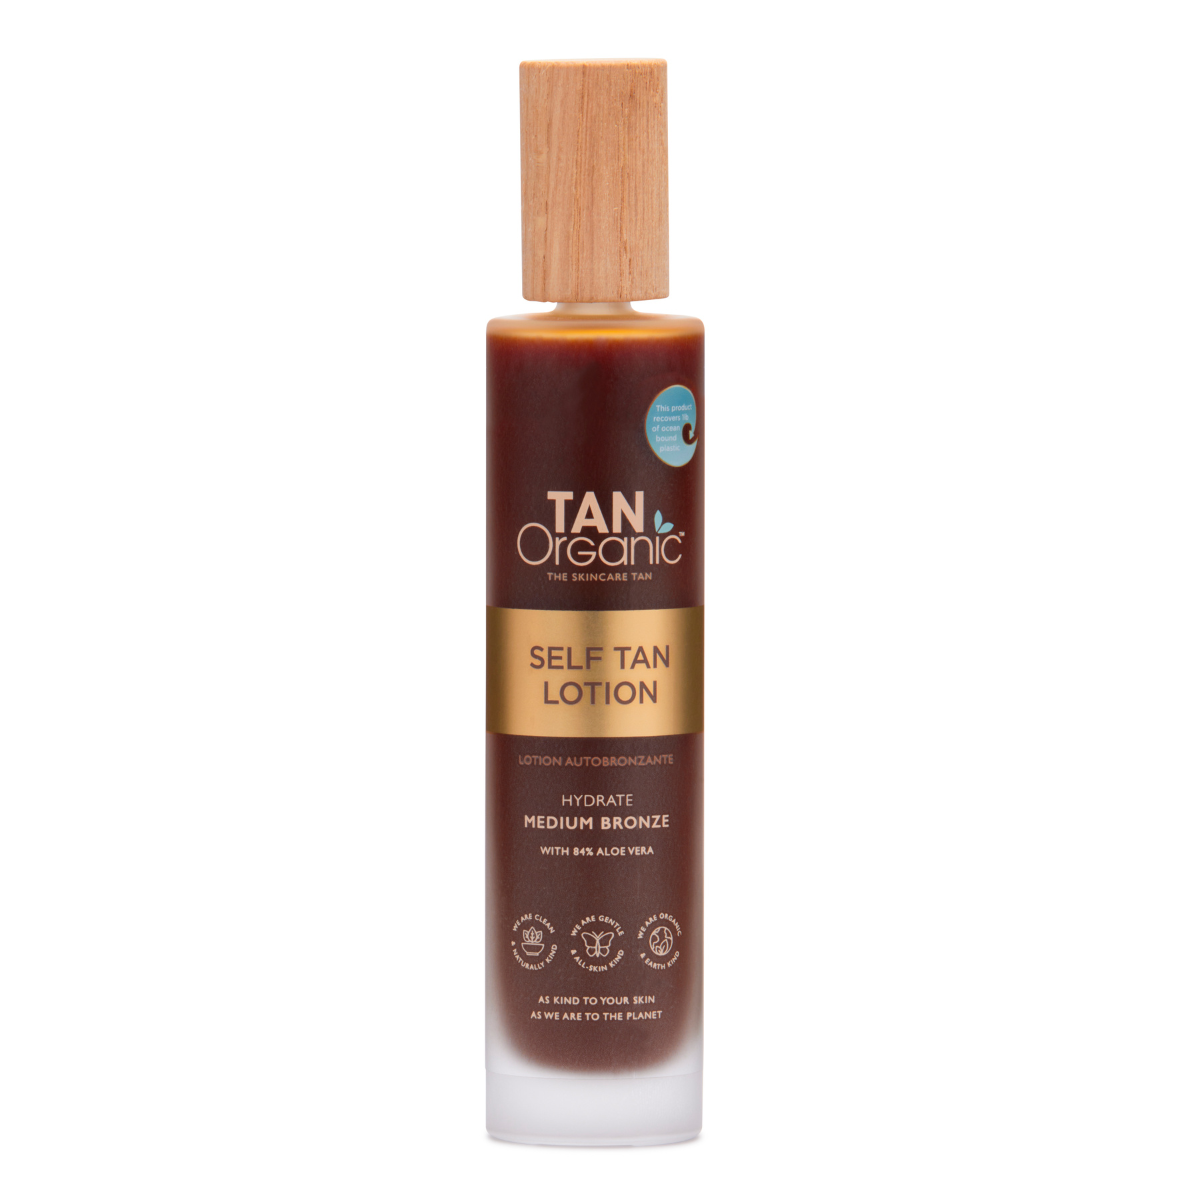 Tan Organic Organic Self Tan Lotion